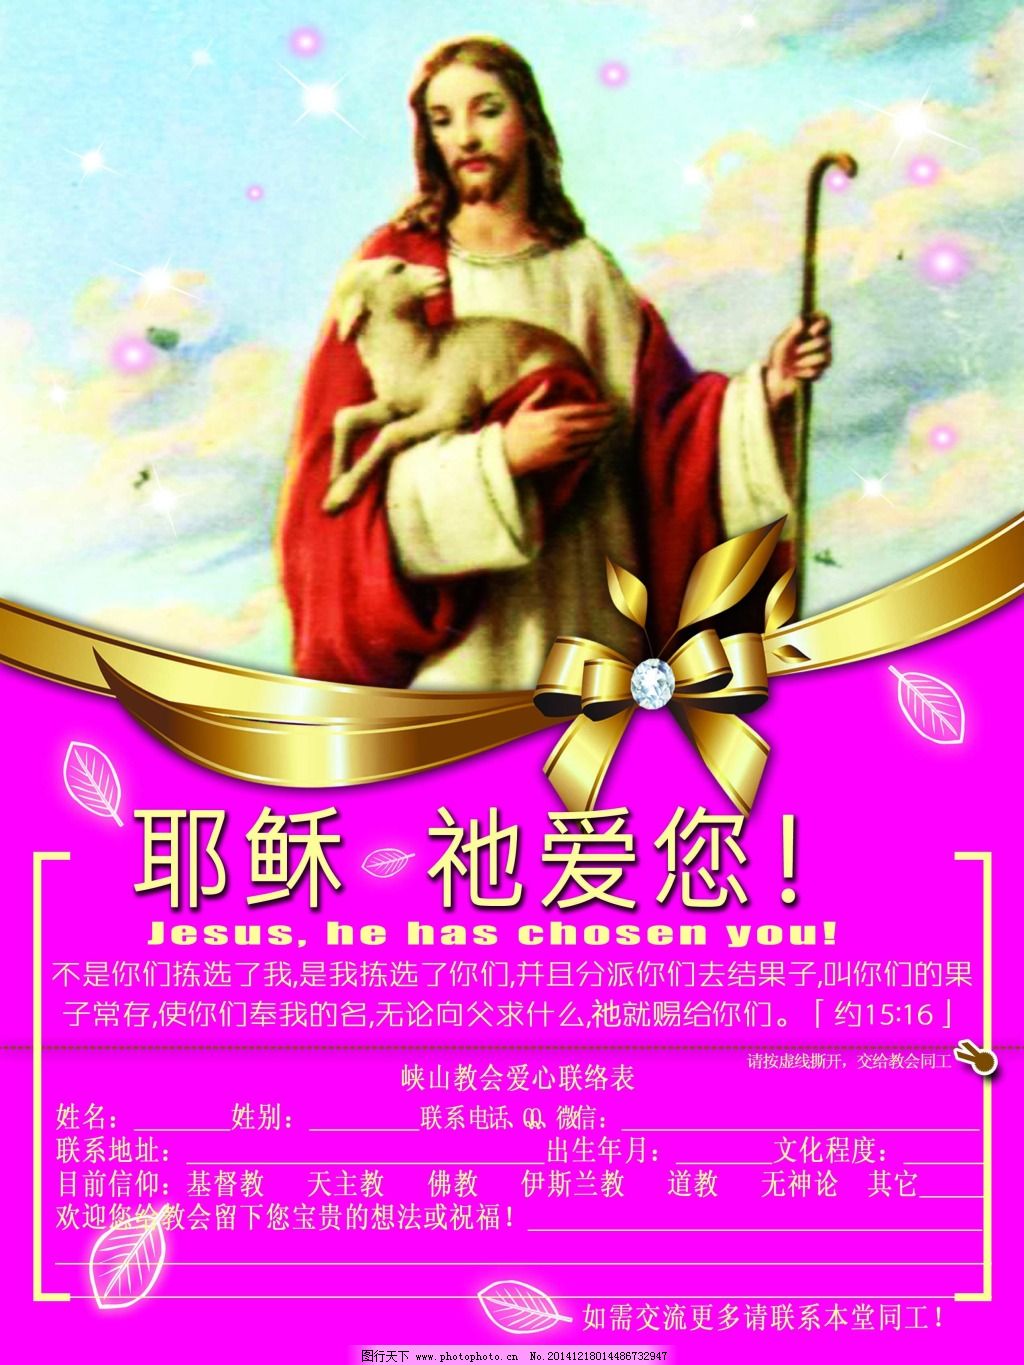 耶稣爱你 JESUS love you 图片 IMG-基督教壁纸图片站主内图片大全 基督徒 壁纸 教会 标志 QQ表情 素材